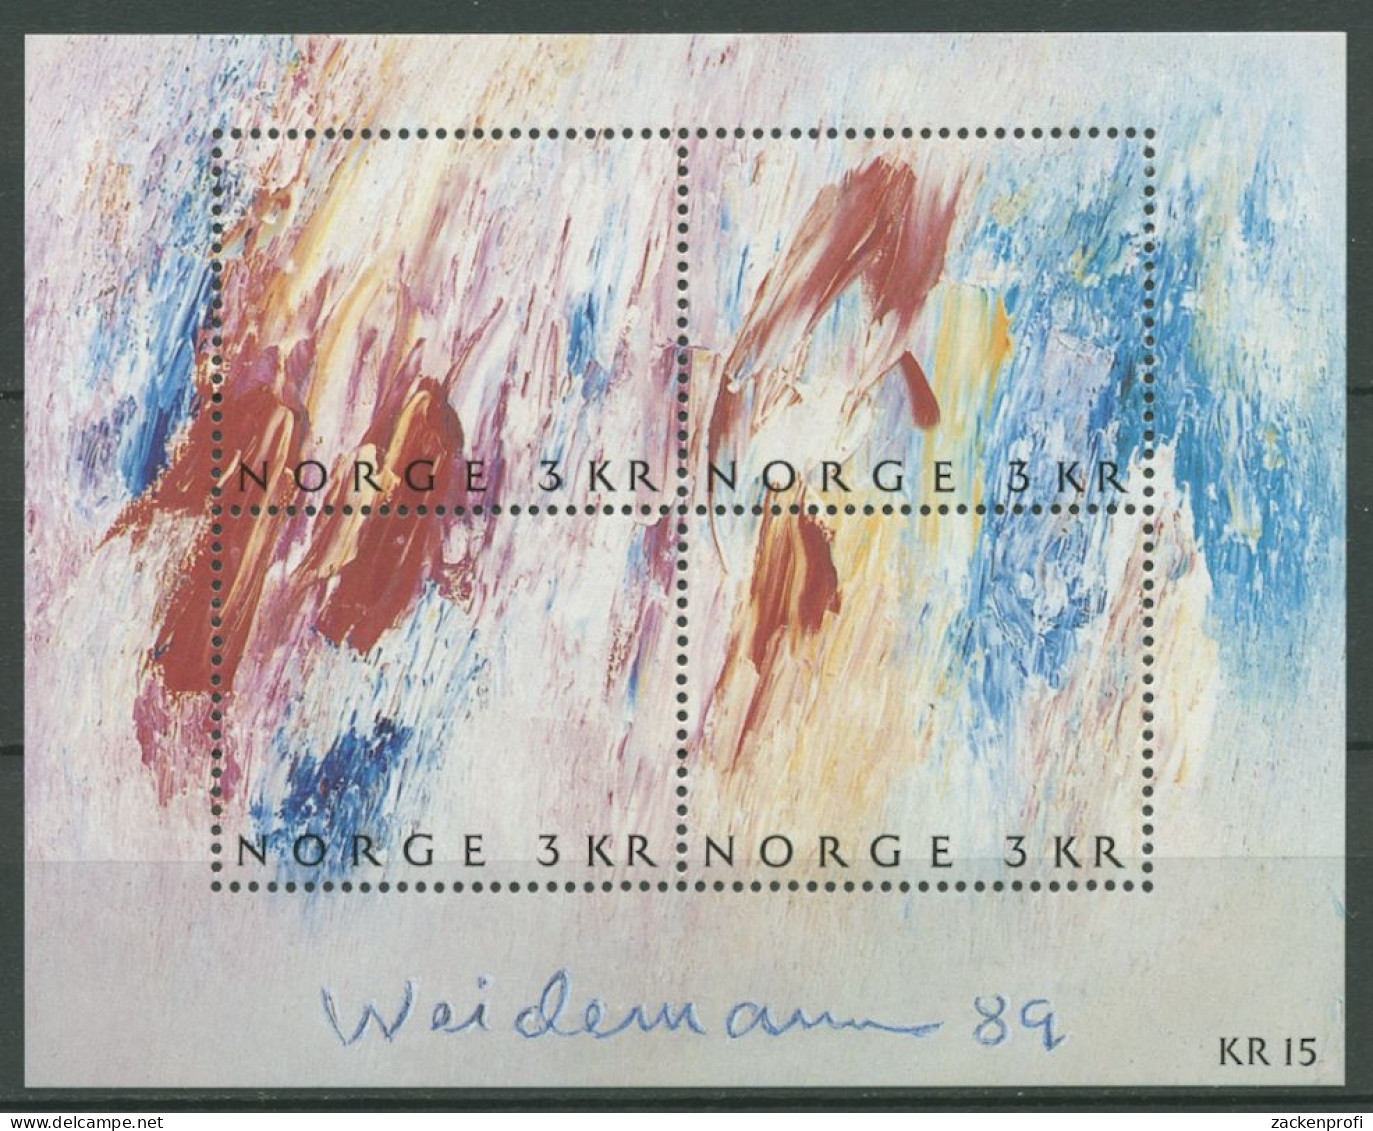 Norwegen 1989 Tag Der Briefmarke Gemälde Block 11 Postfrisch (C25941) - Blocks & Sheetlets